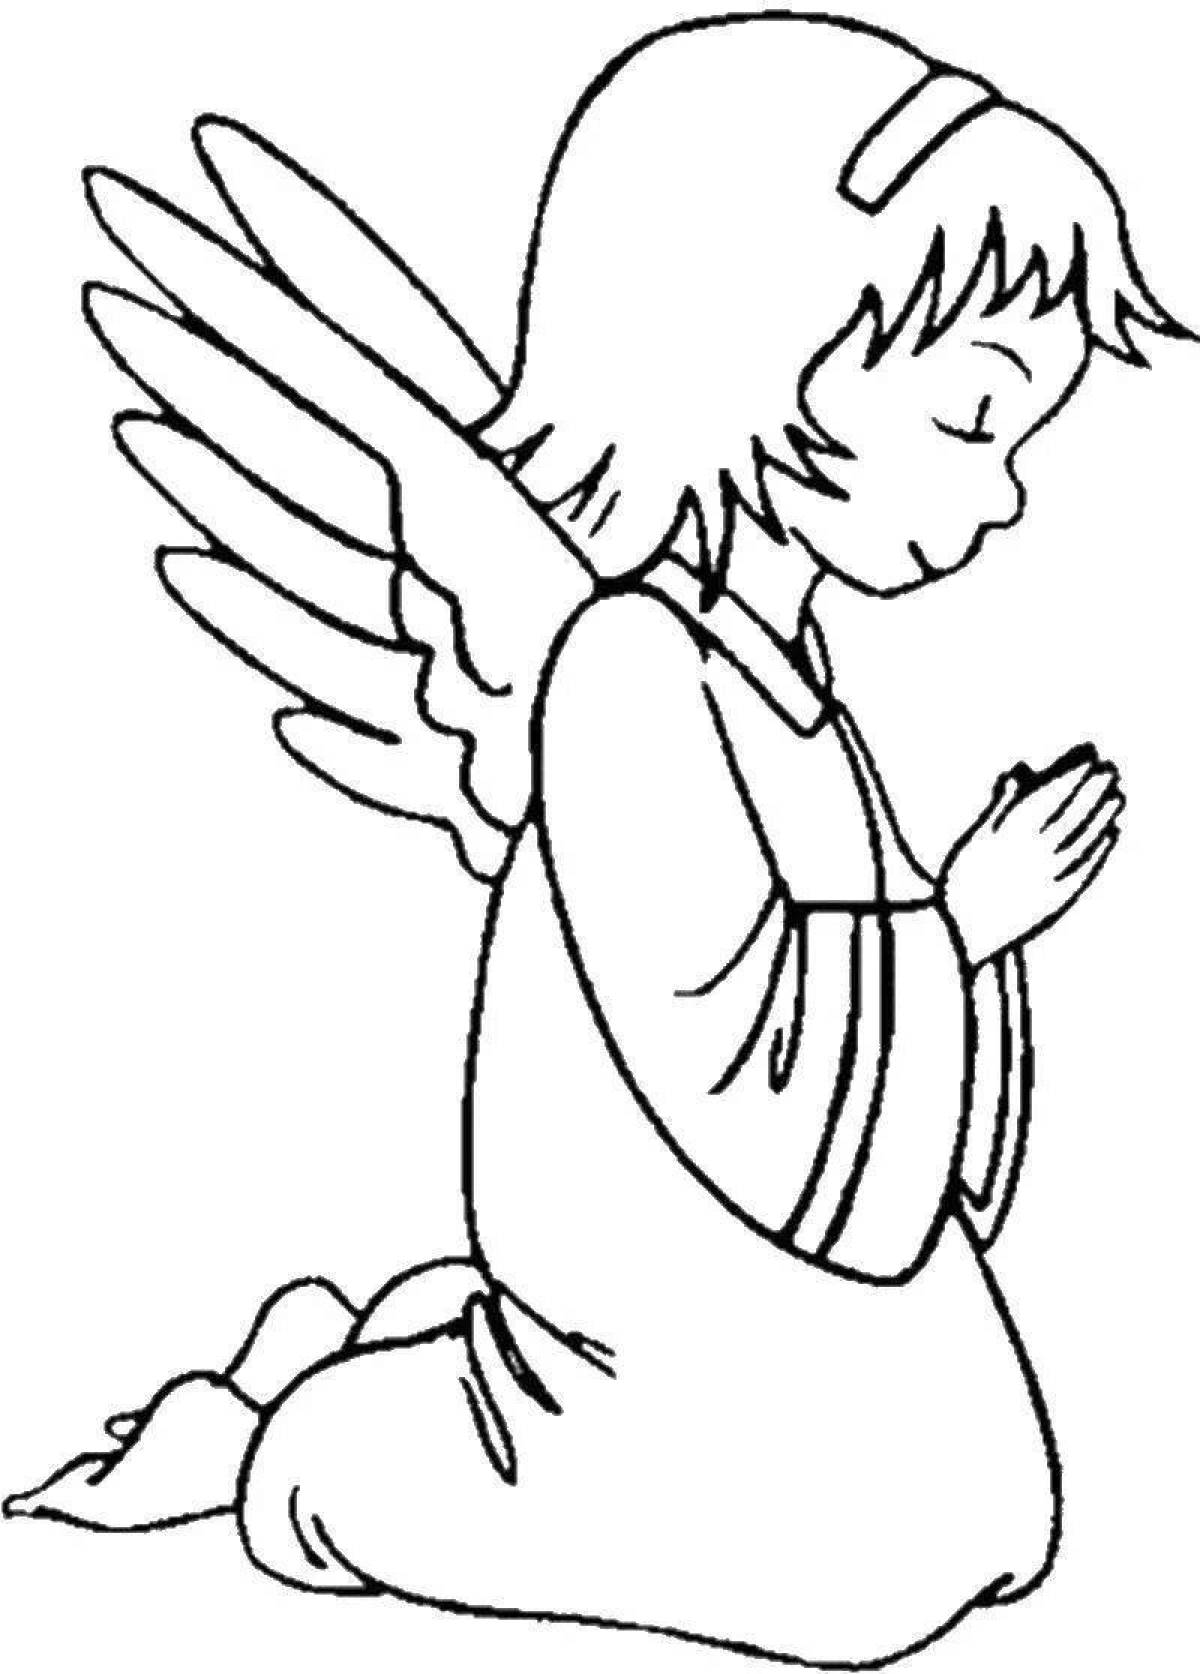 Лучистая раскраска ангел для детей 3-4 лет